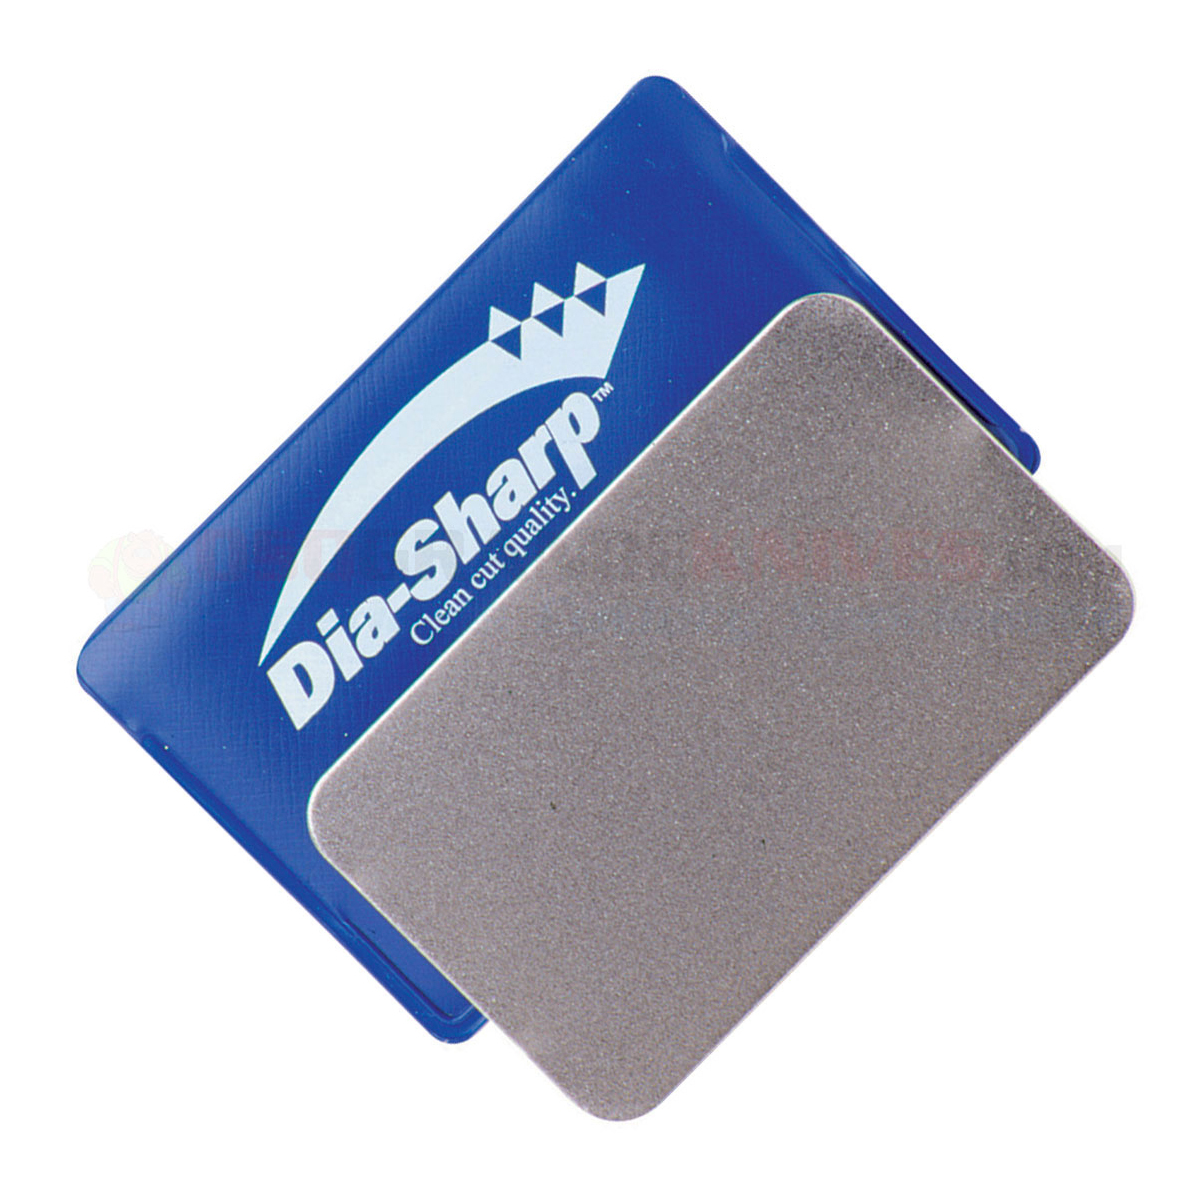 Алмазный брусок DMT Credit Card Sized Coarse, 325 меш (45 мкм) с виниловым чехлом